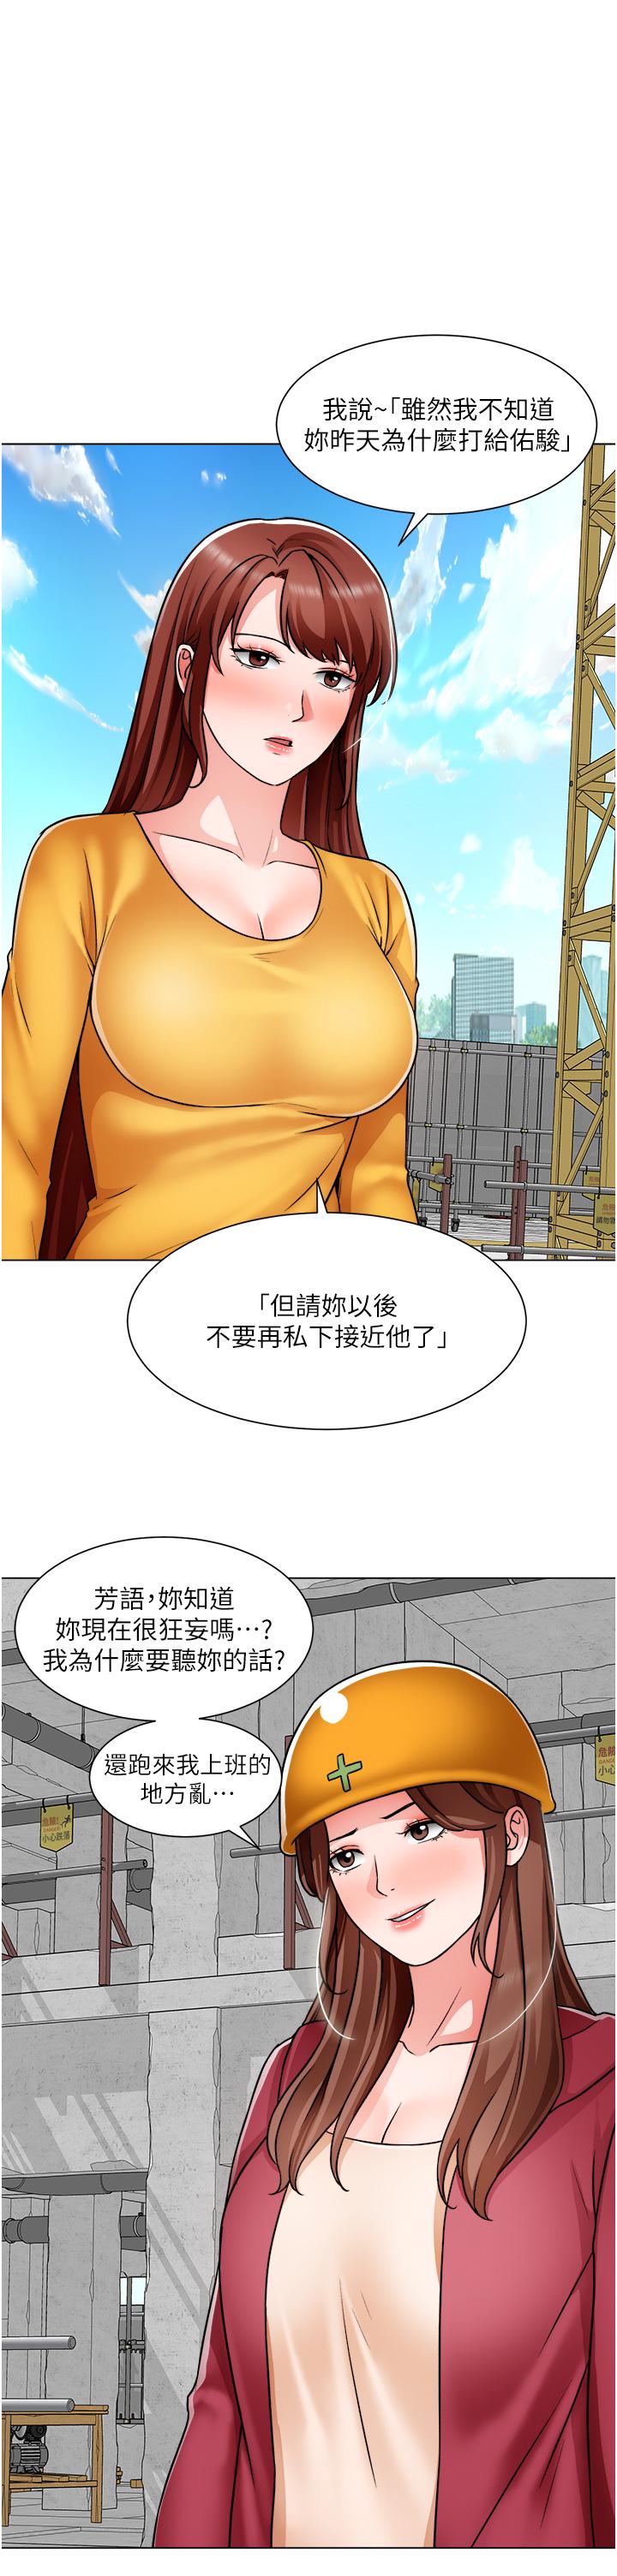 《誠徵粗工》在线观看 第46话-佑骏争夺战 漫画图片5